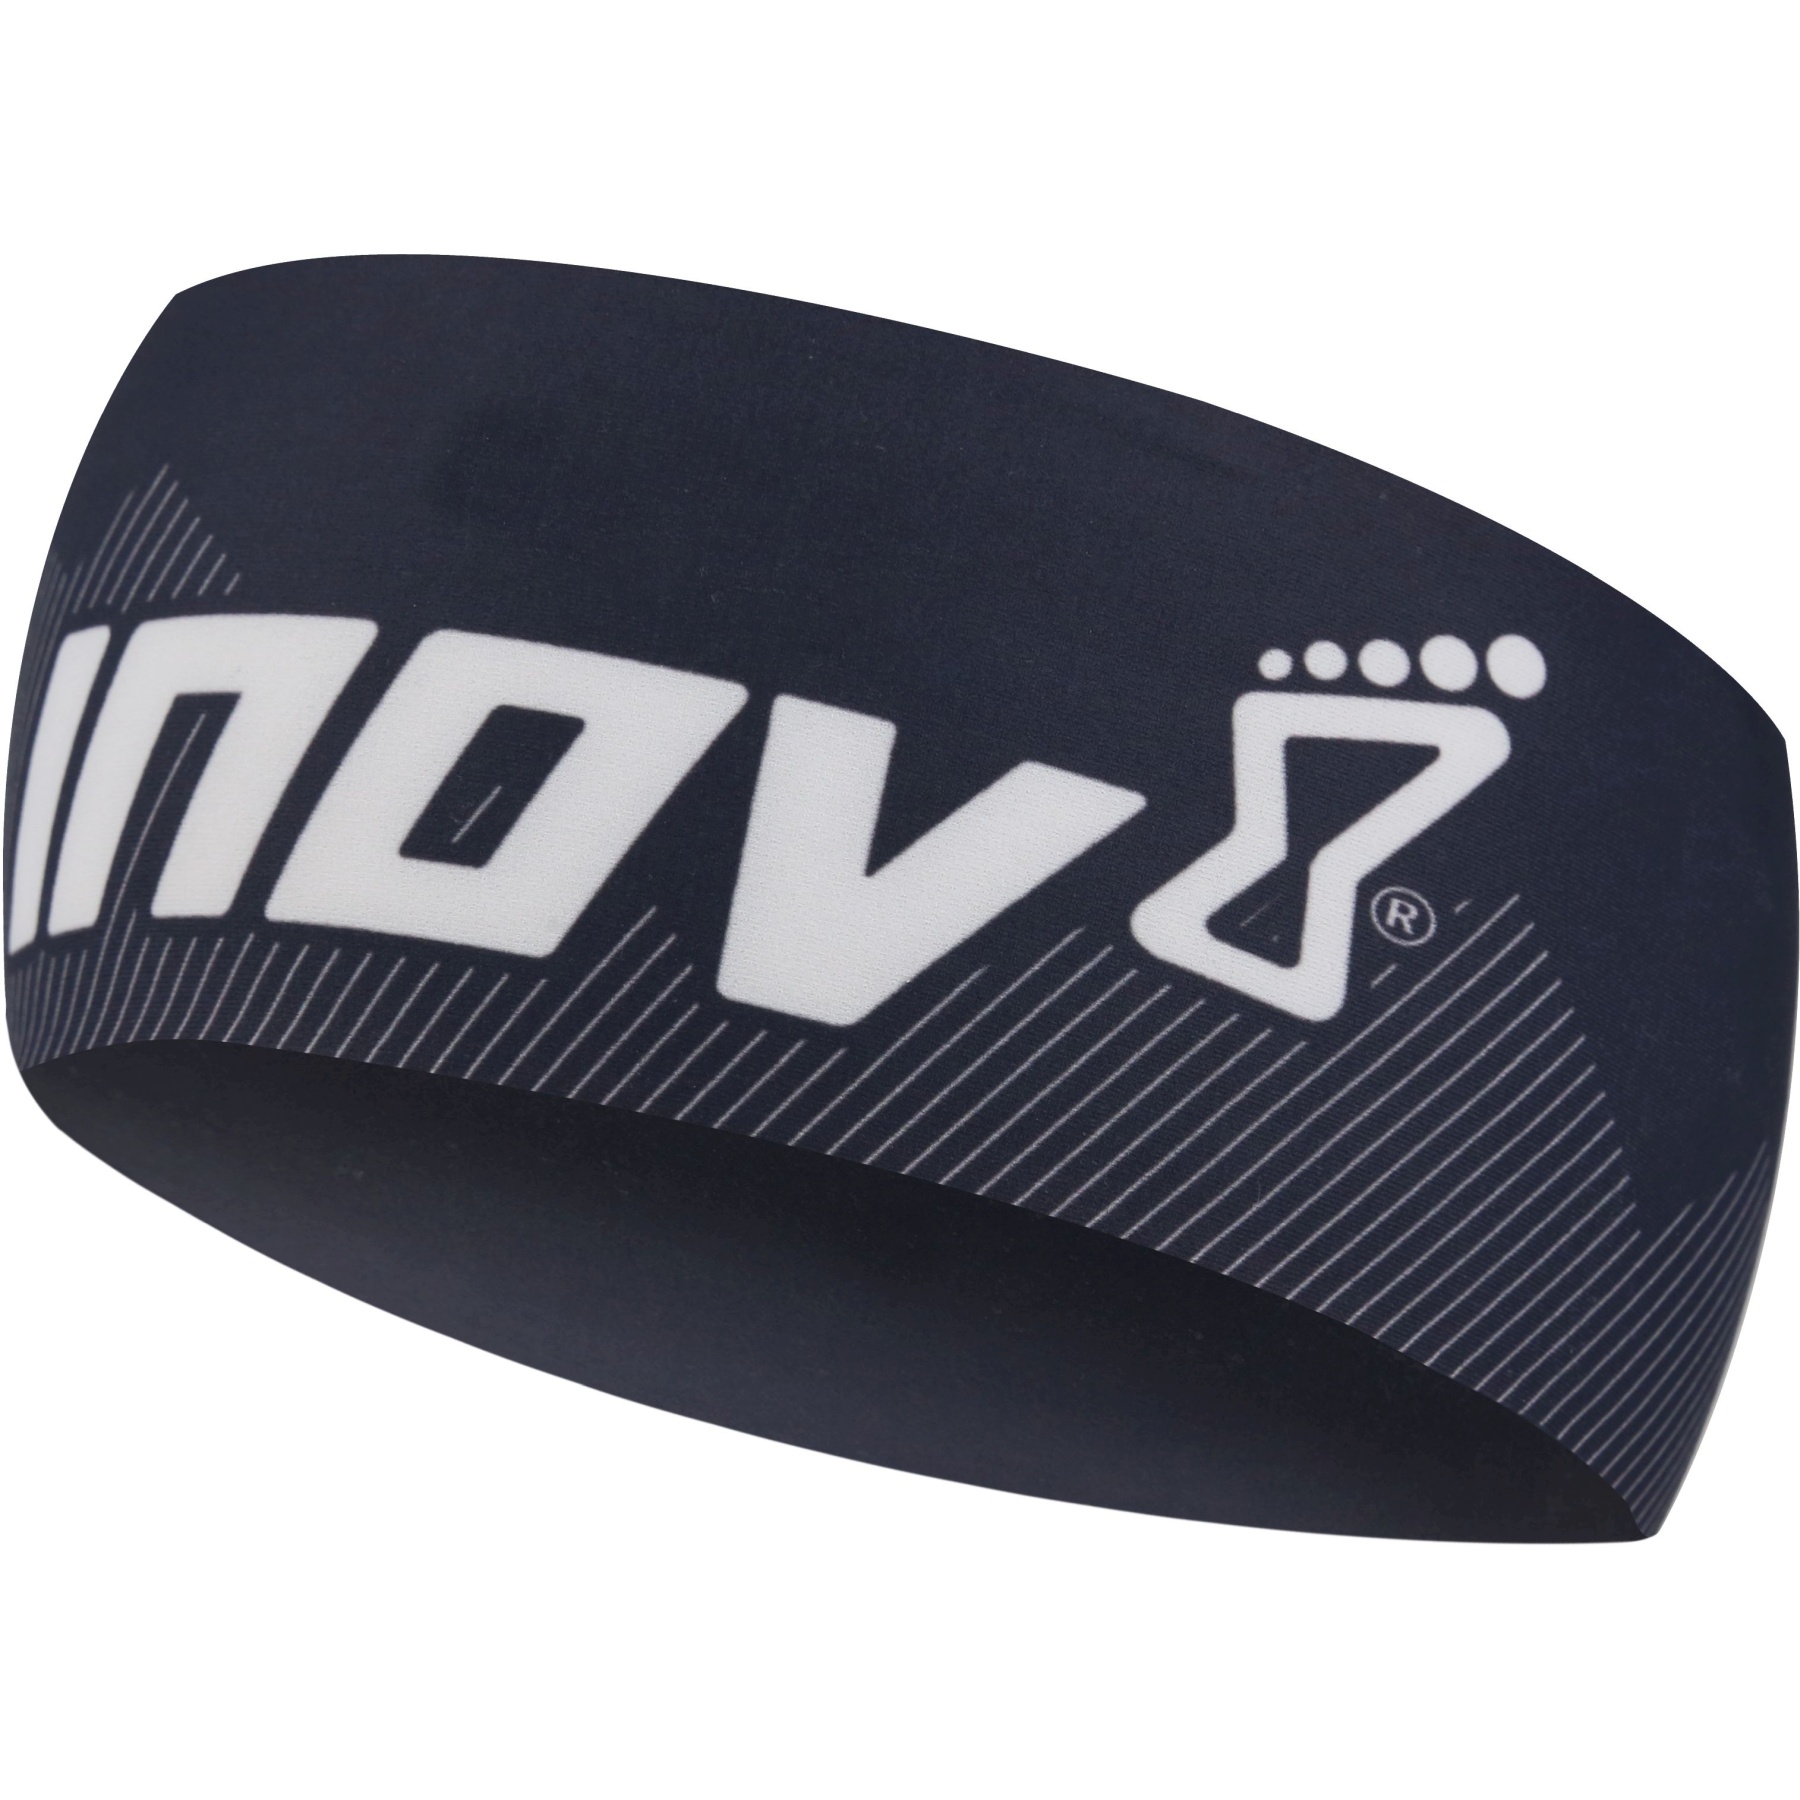 Produktbild von Inov-8 Race Elite Stirnband - schwarz/weiß